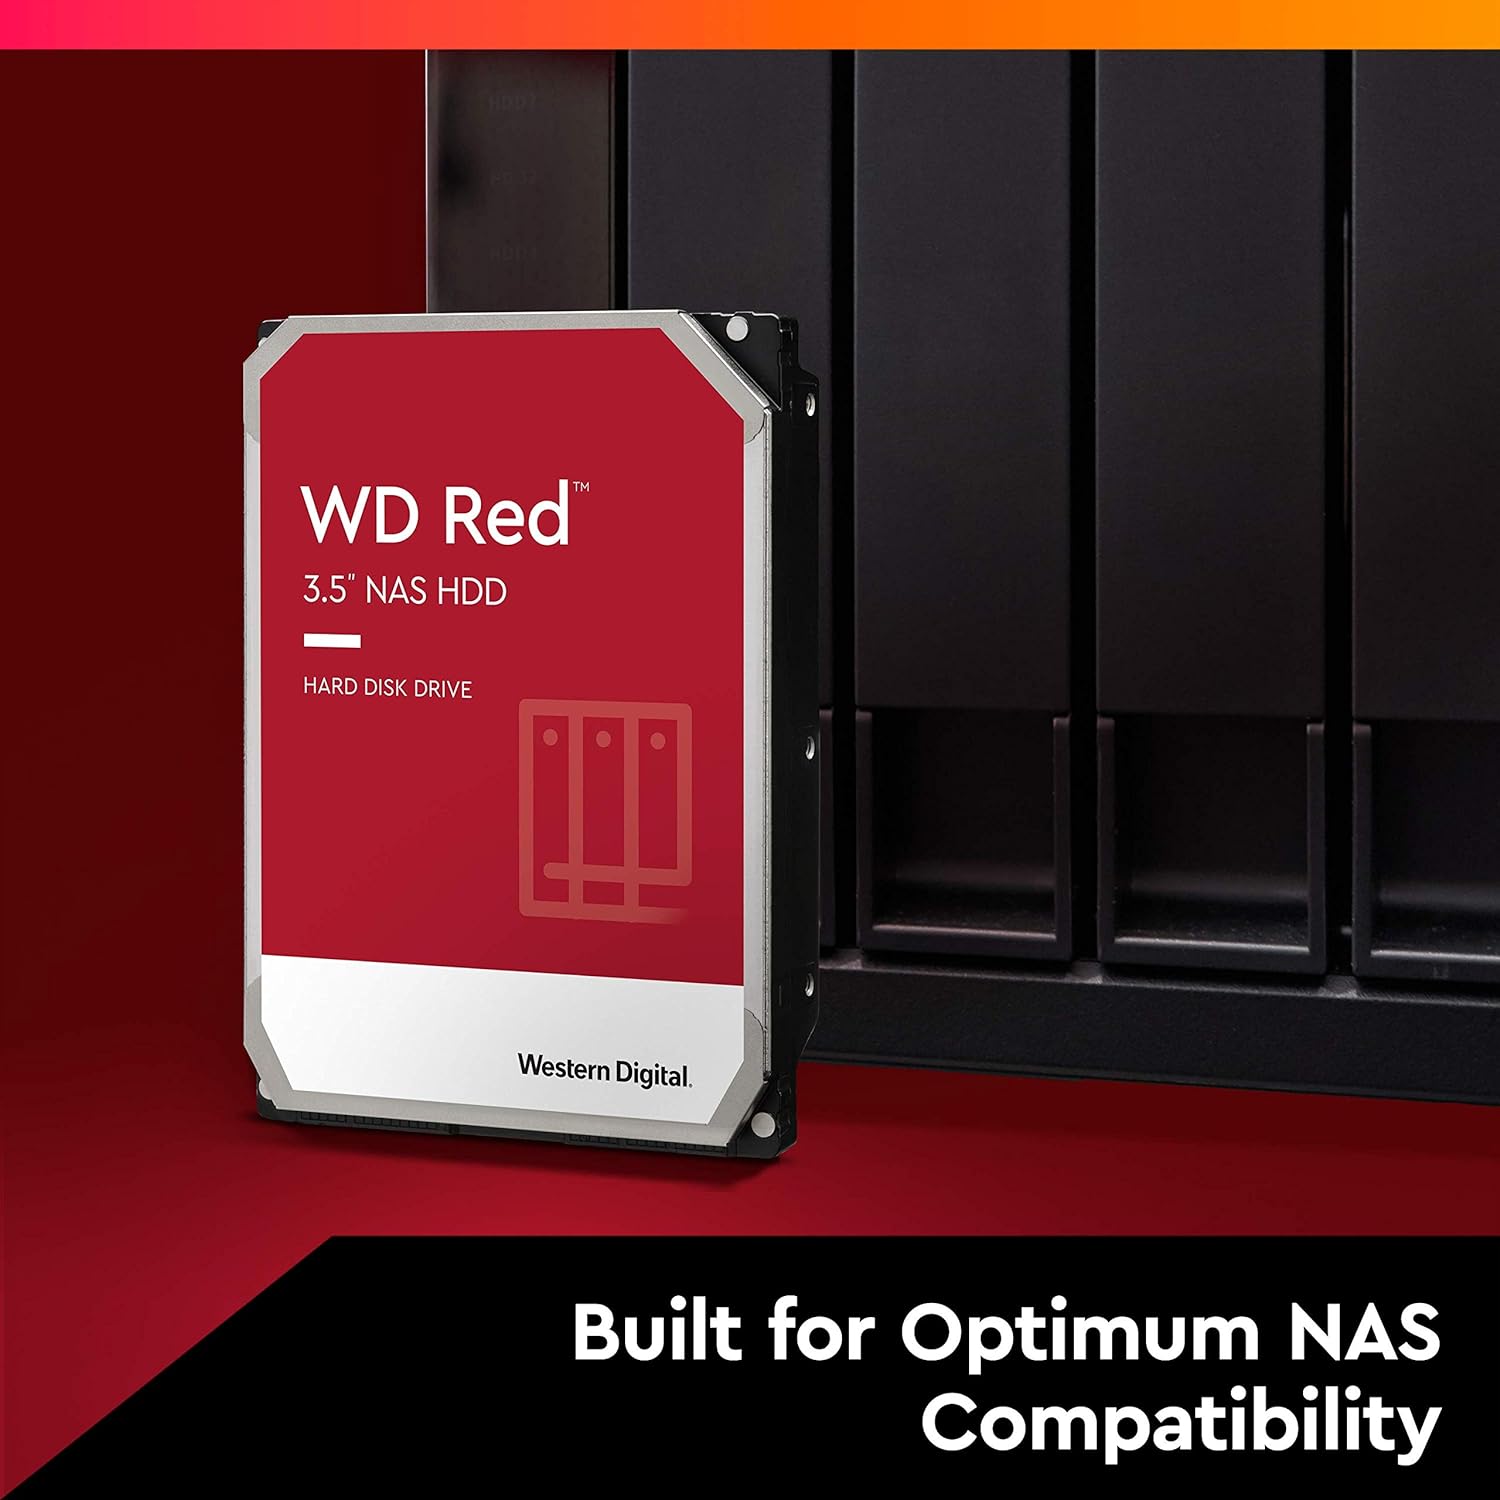 WD Red 4TB NAS Internal Hard Drive - 5400 RPM, SATA 6Gb/s, SMR